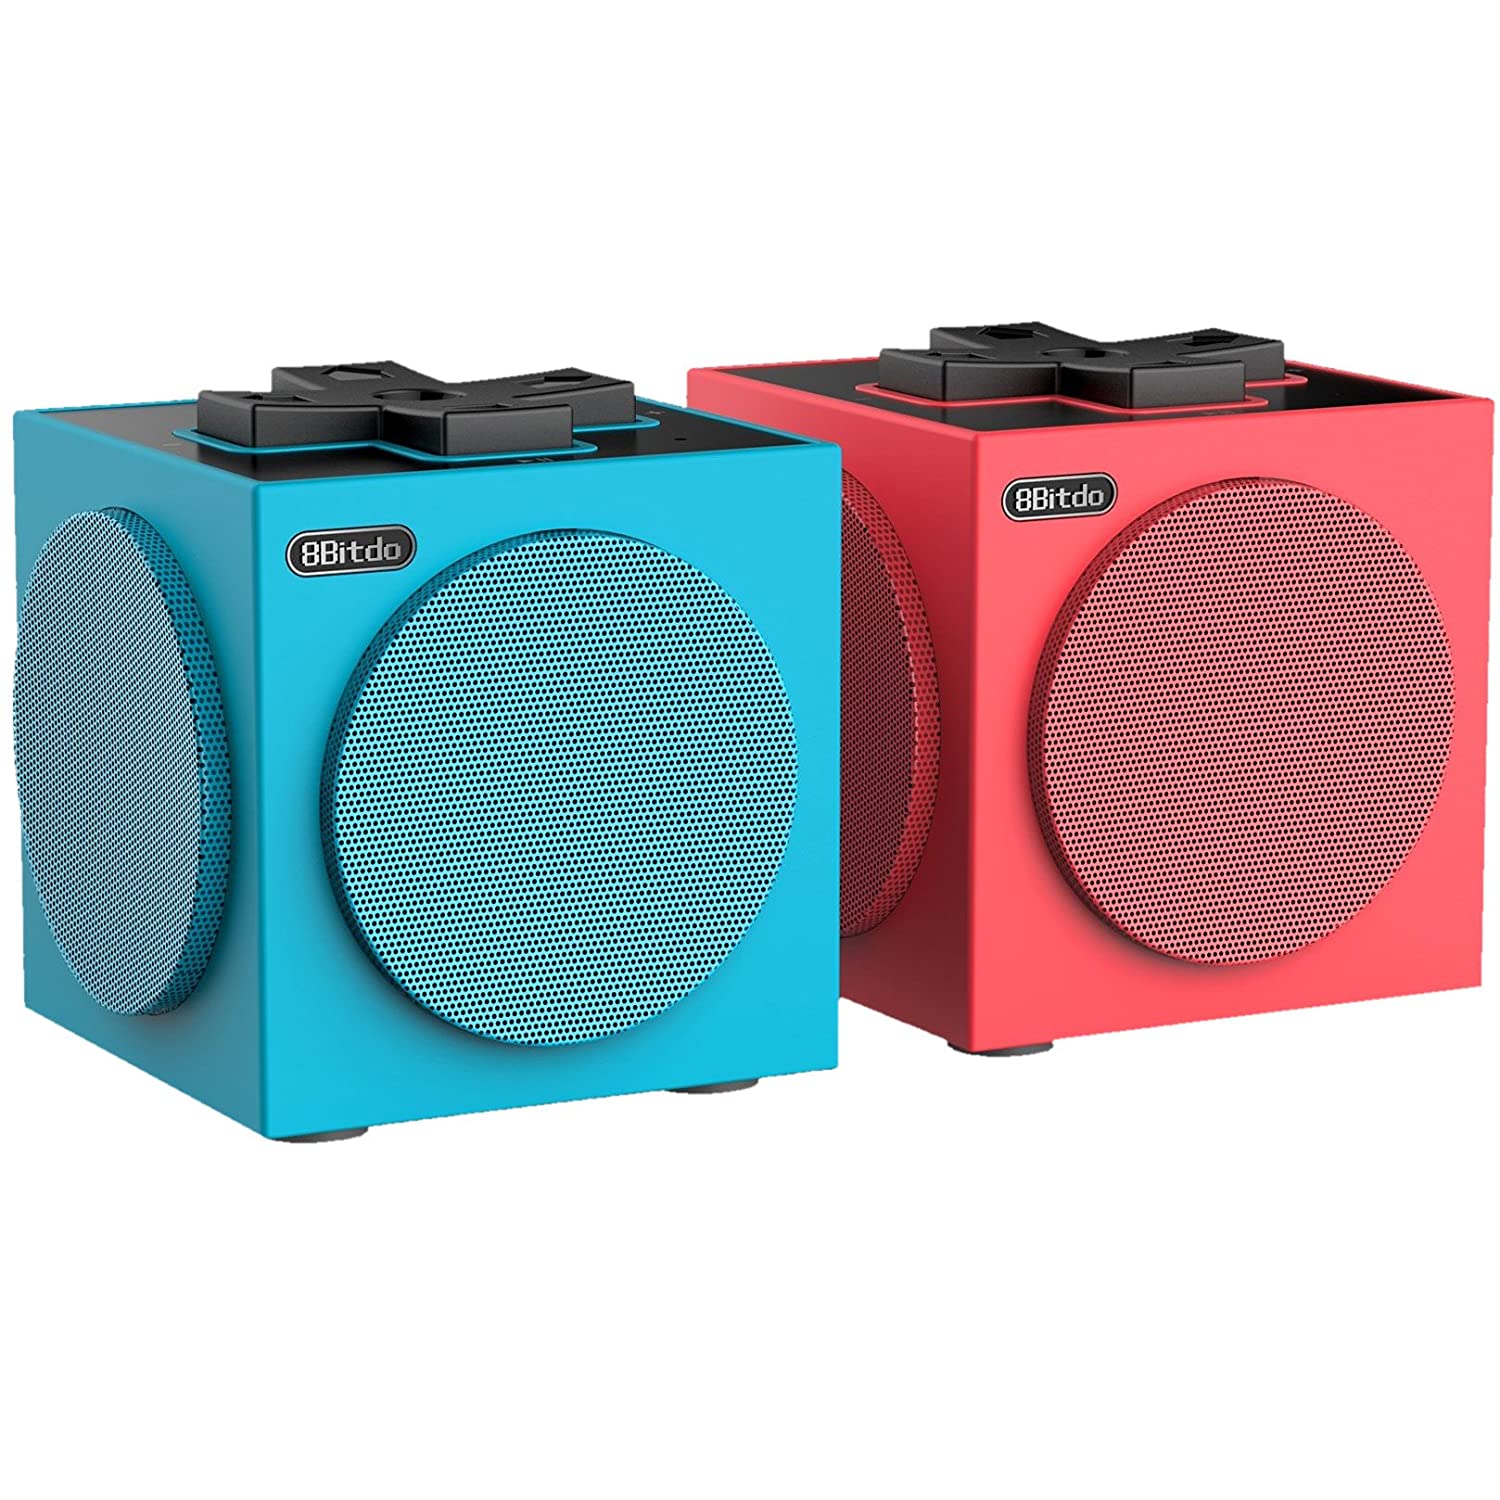 Alto-falantes TwinCube Bluetooth 8BitDo - Nintendo Switch - Envio Internacional - Frete Grátis